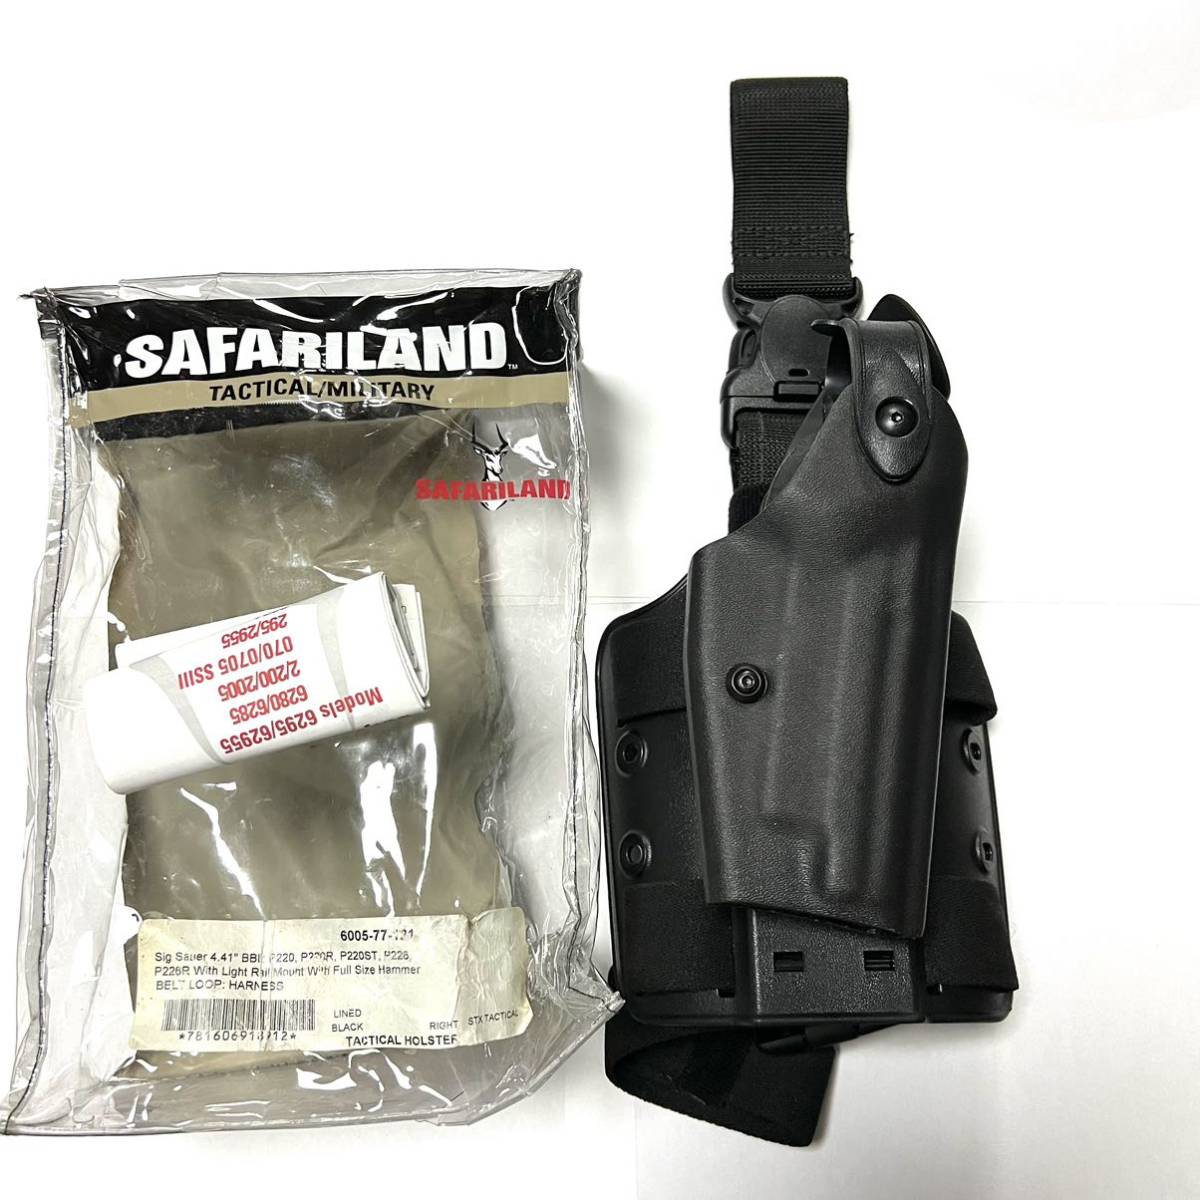 Safari land サファリランド レッグホルスターP220 P226 右用 - 個人装備